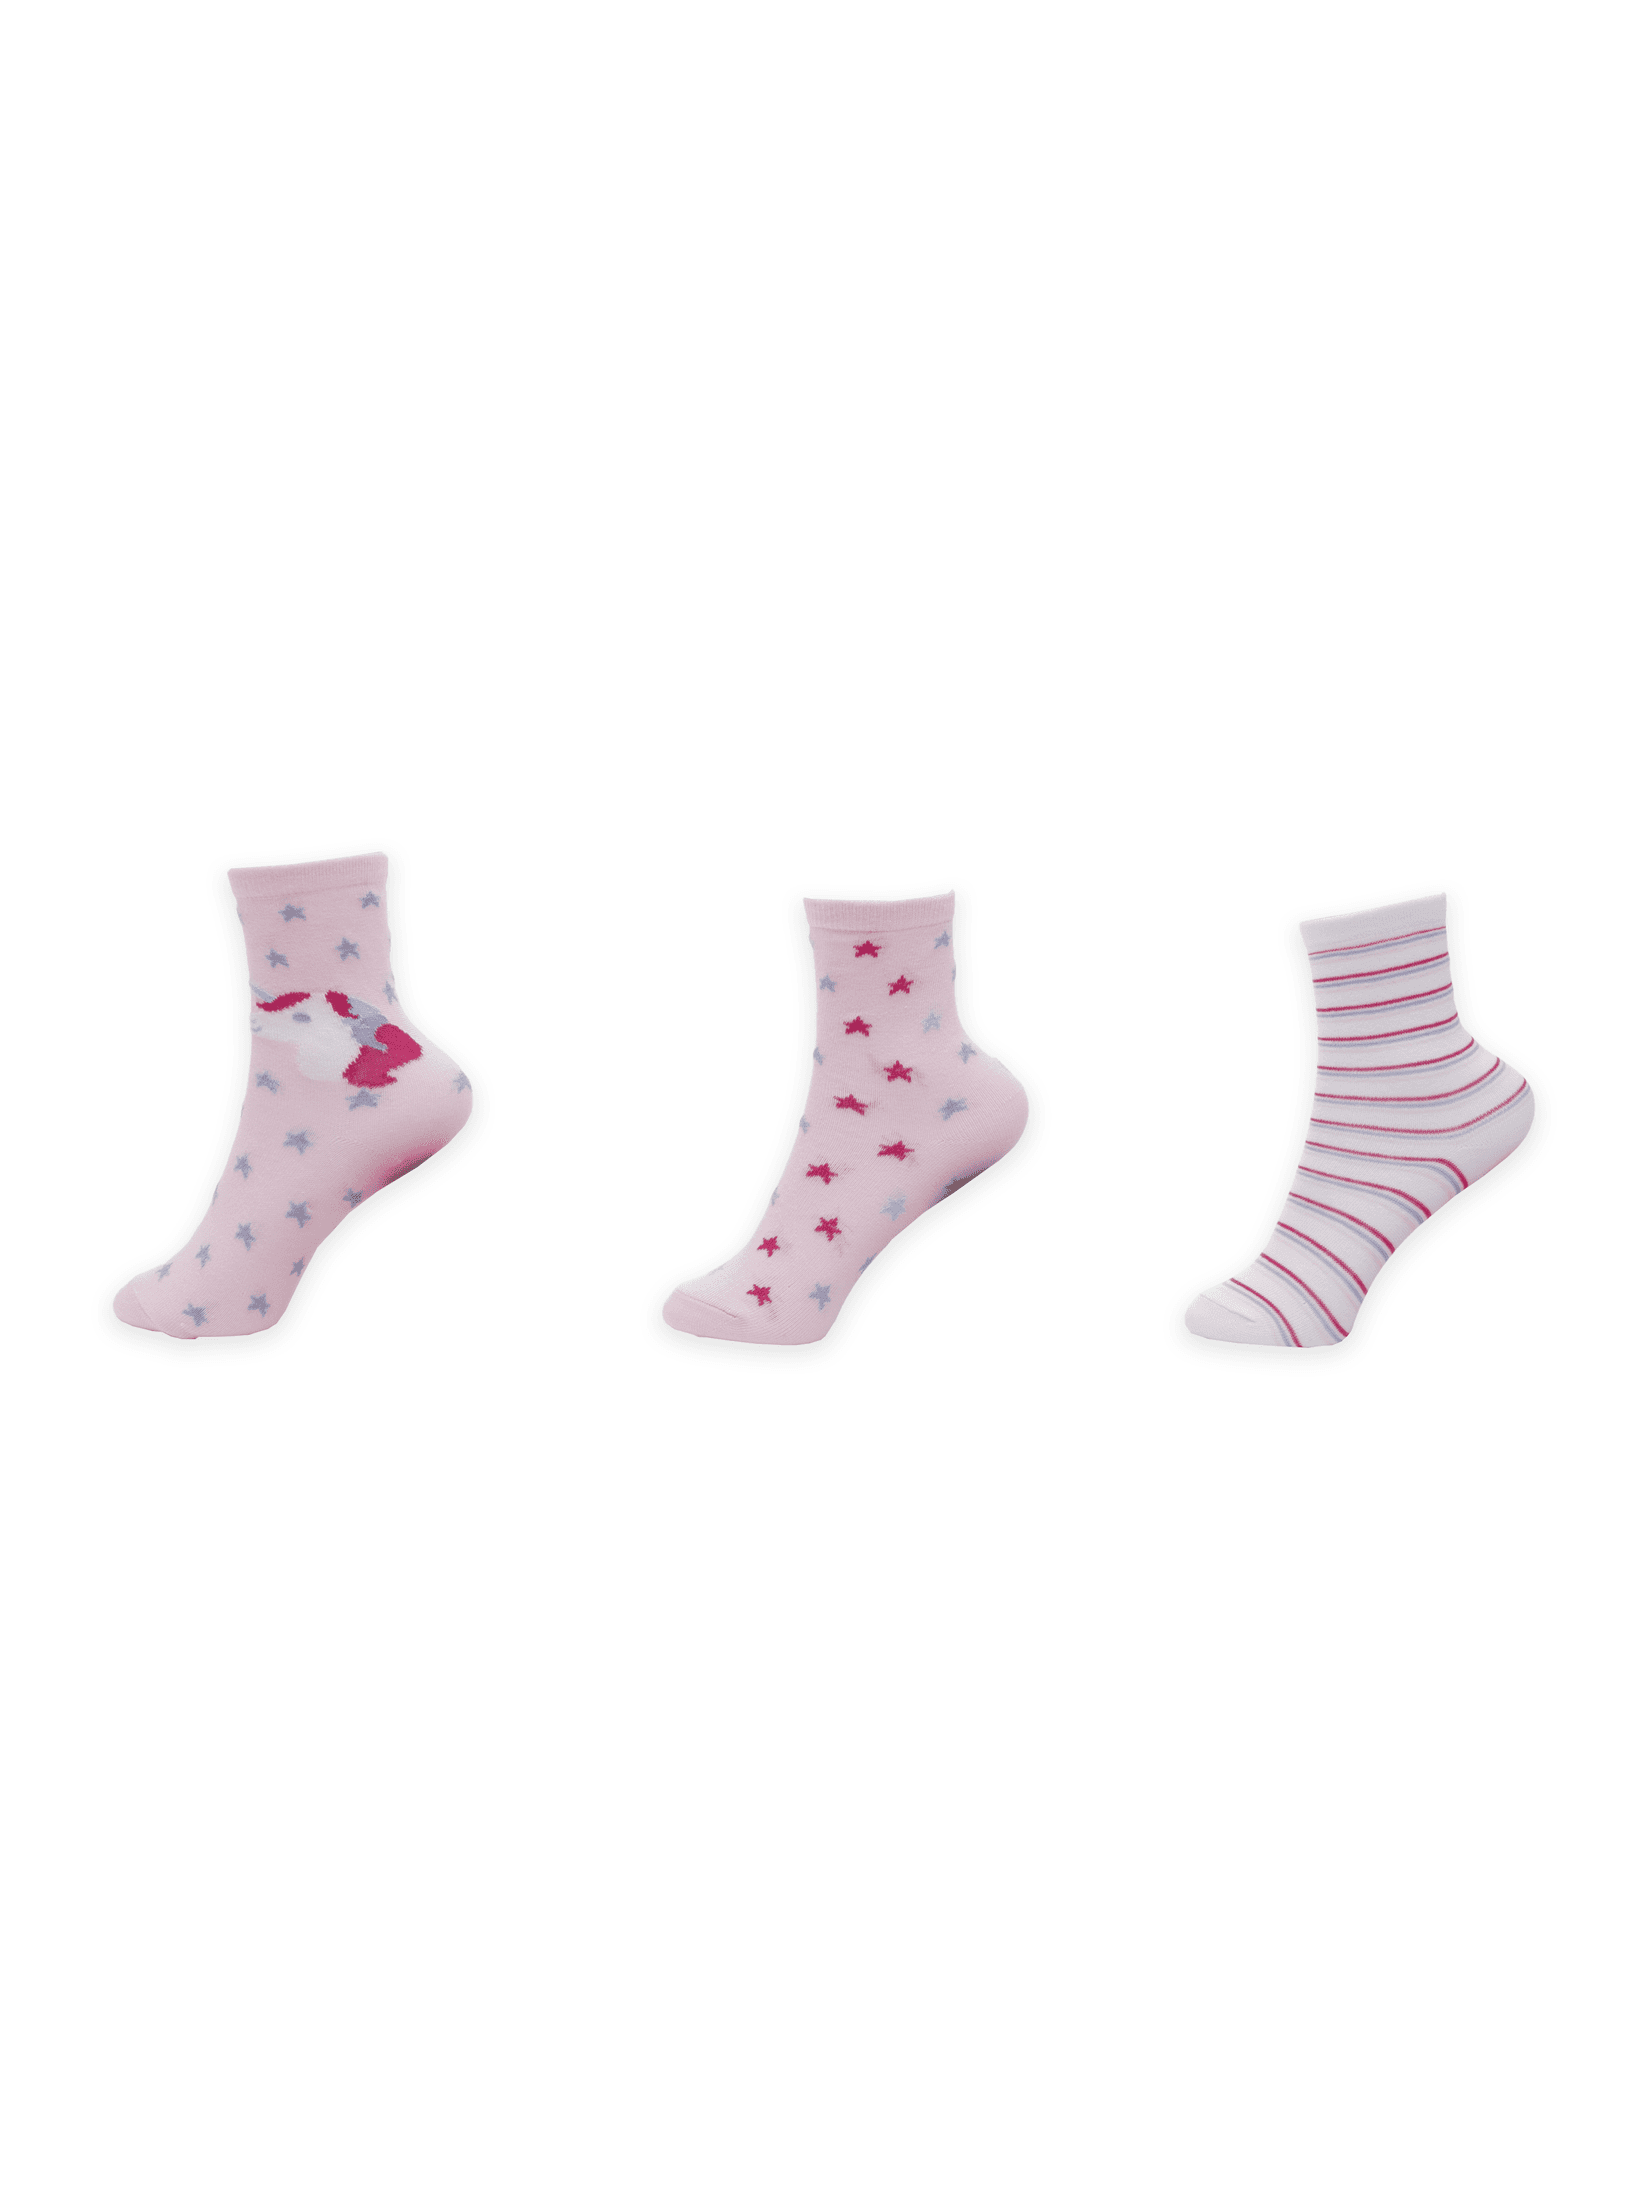 Selected image for SF Ženske klasične čarape Kids3/1 Pink-White-Unicorn roze